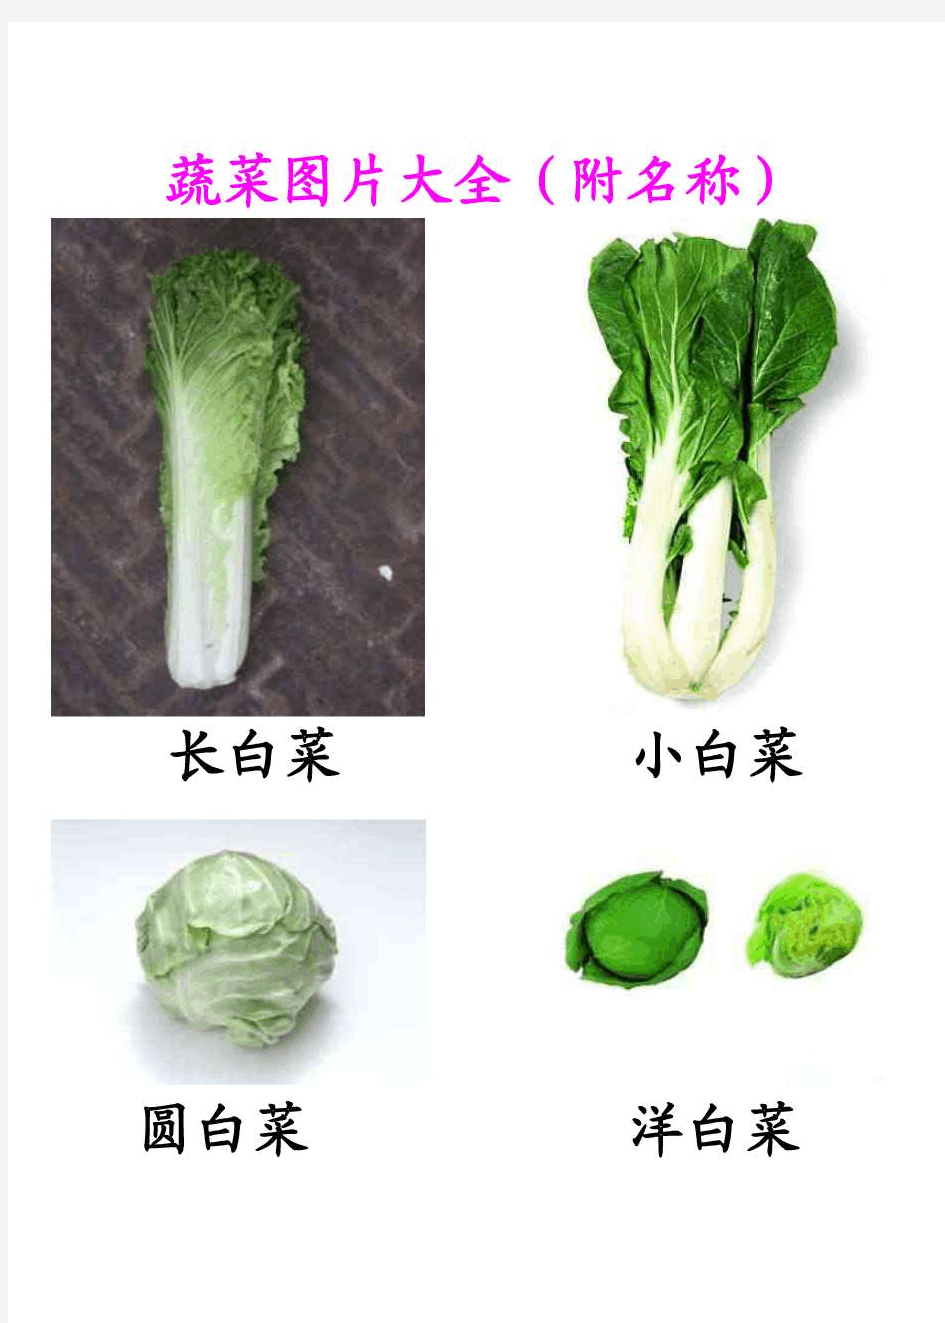 蔬菜图片大全(附名称)